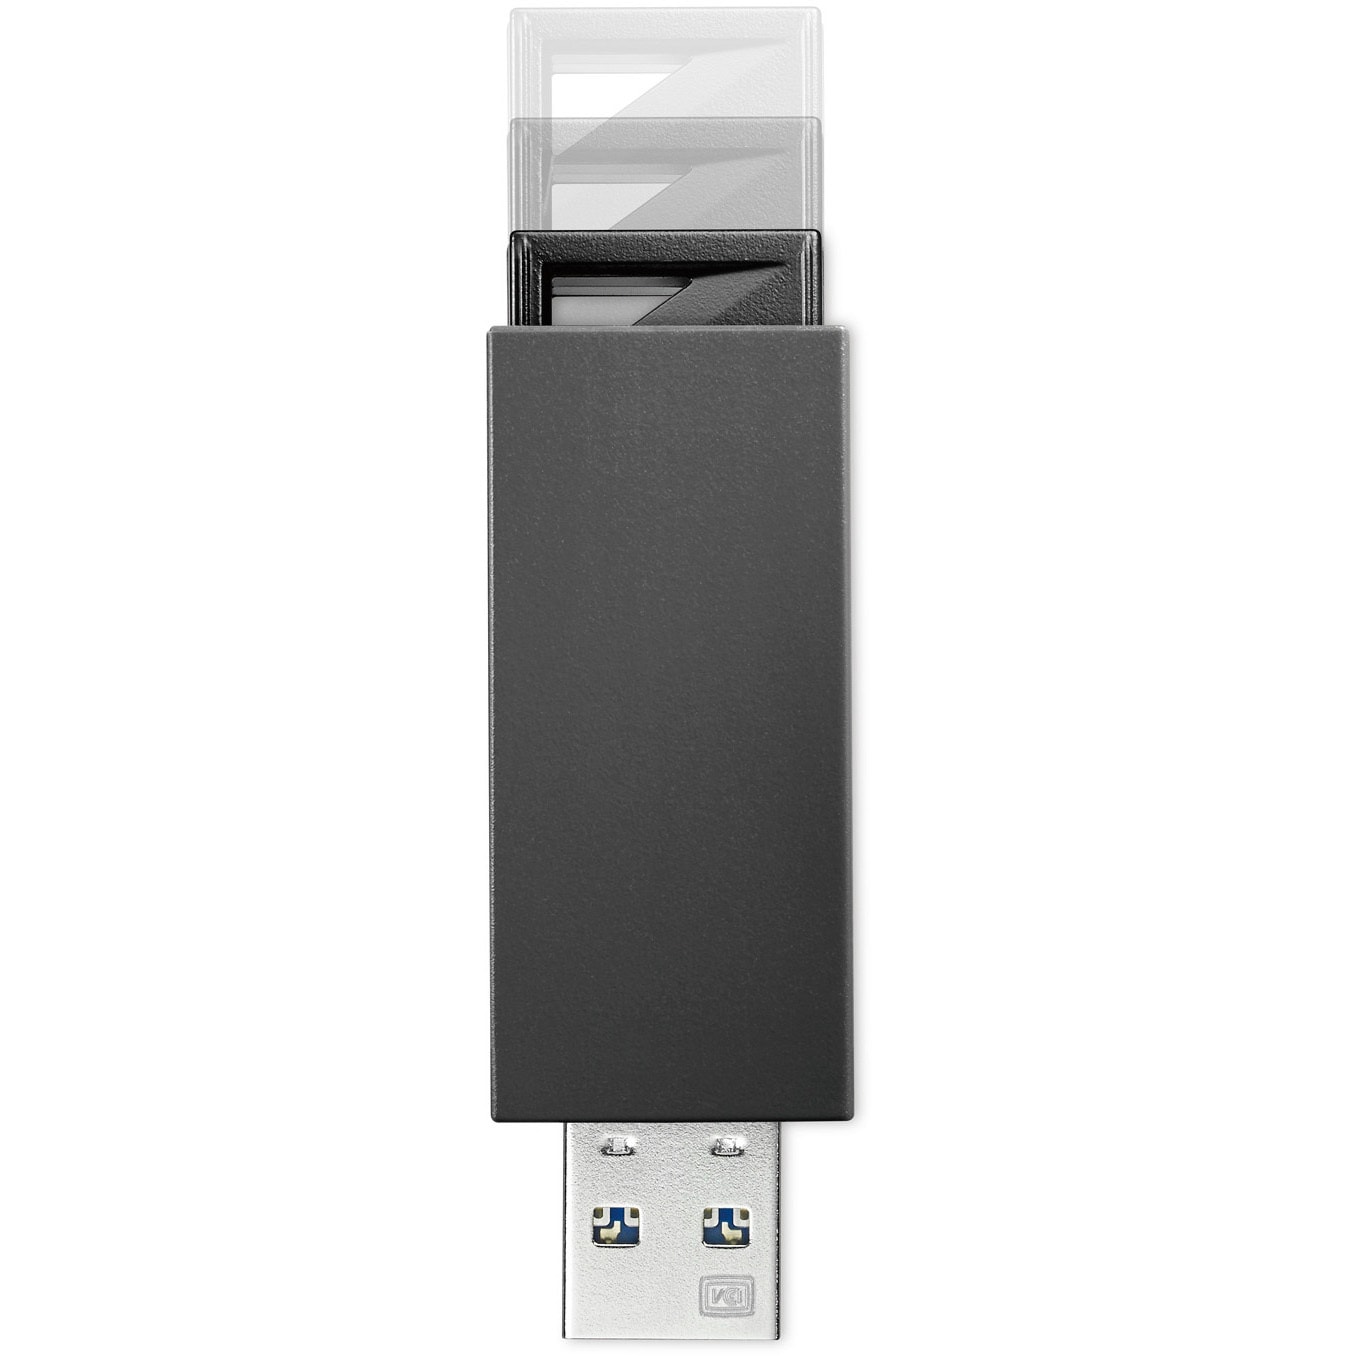 I Oデータ USB 3.1 Gen 1（USB 3.0） 2.0対応 外付けハードディスク